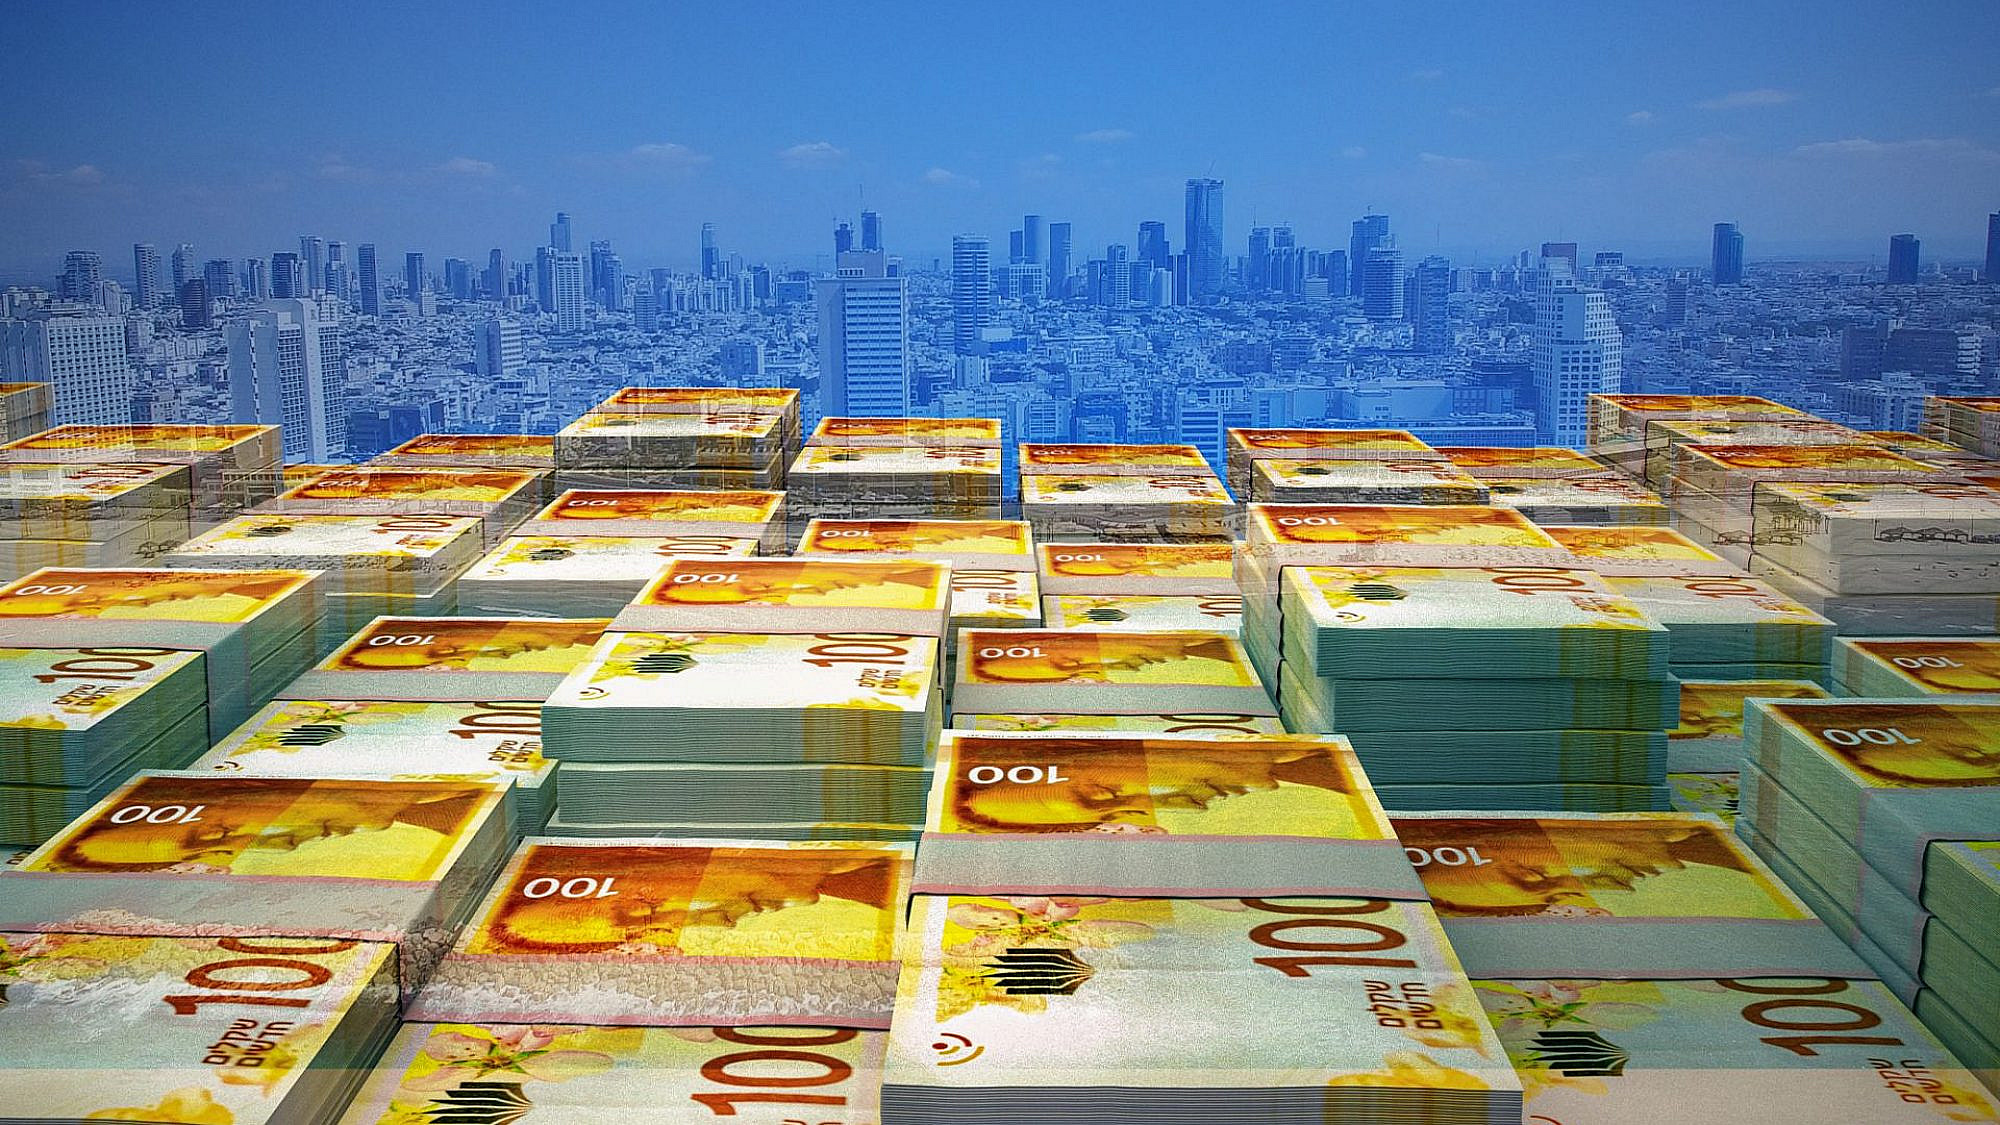 מגדלים של כסף. תל אביב העיר השלישית הכי יקרה בעולם (צילום: שאטרסטוק)